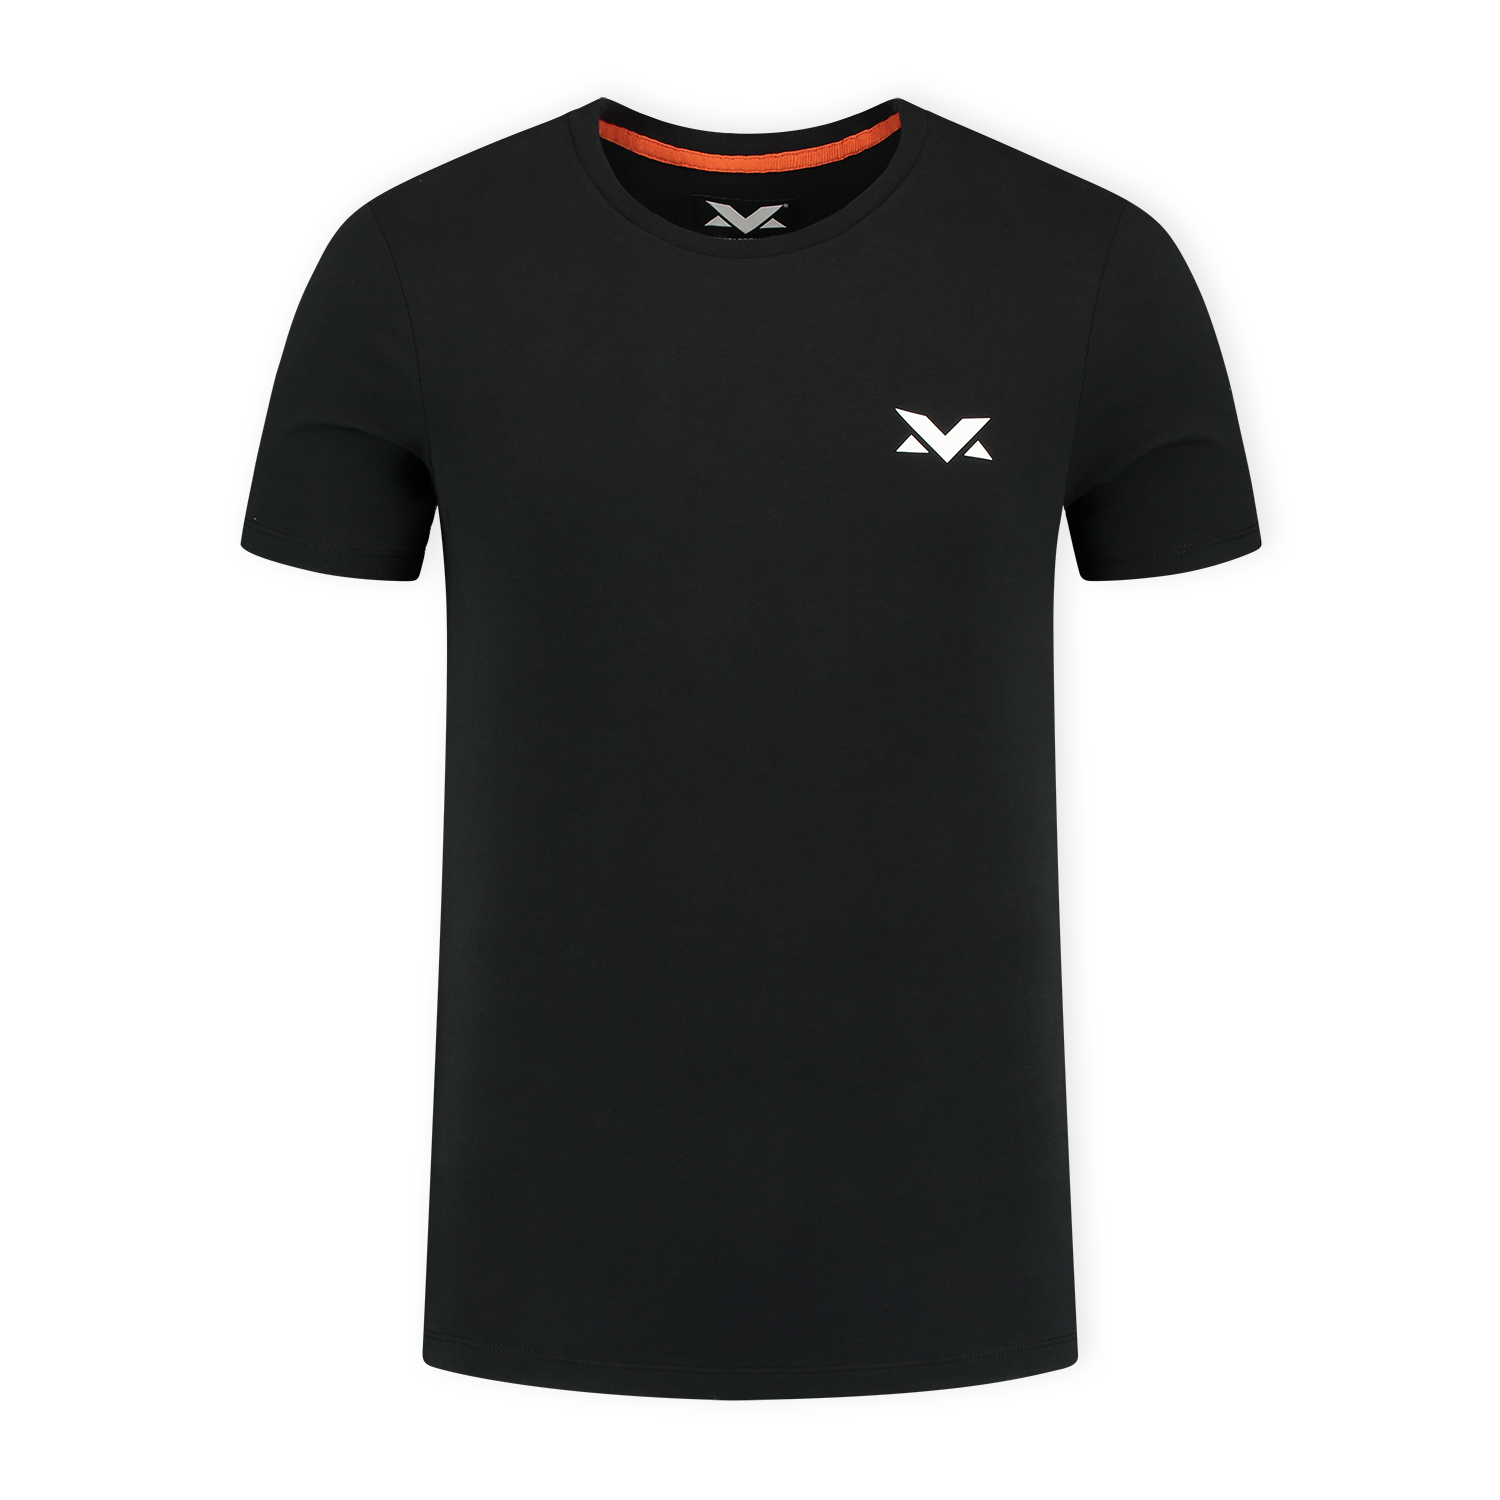 MV T-shirt The Limits - Zwart - XL - Max Verstappen